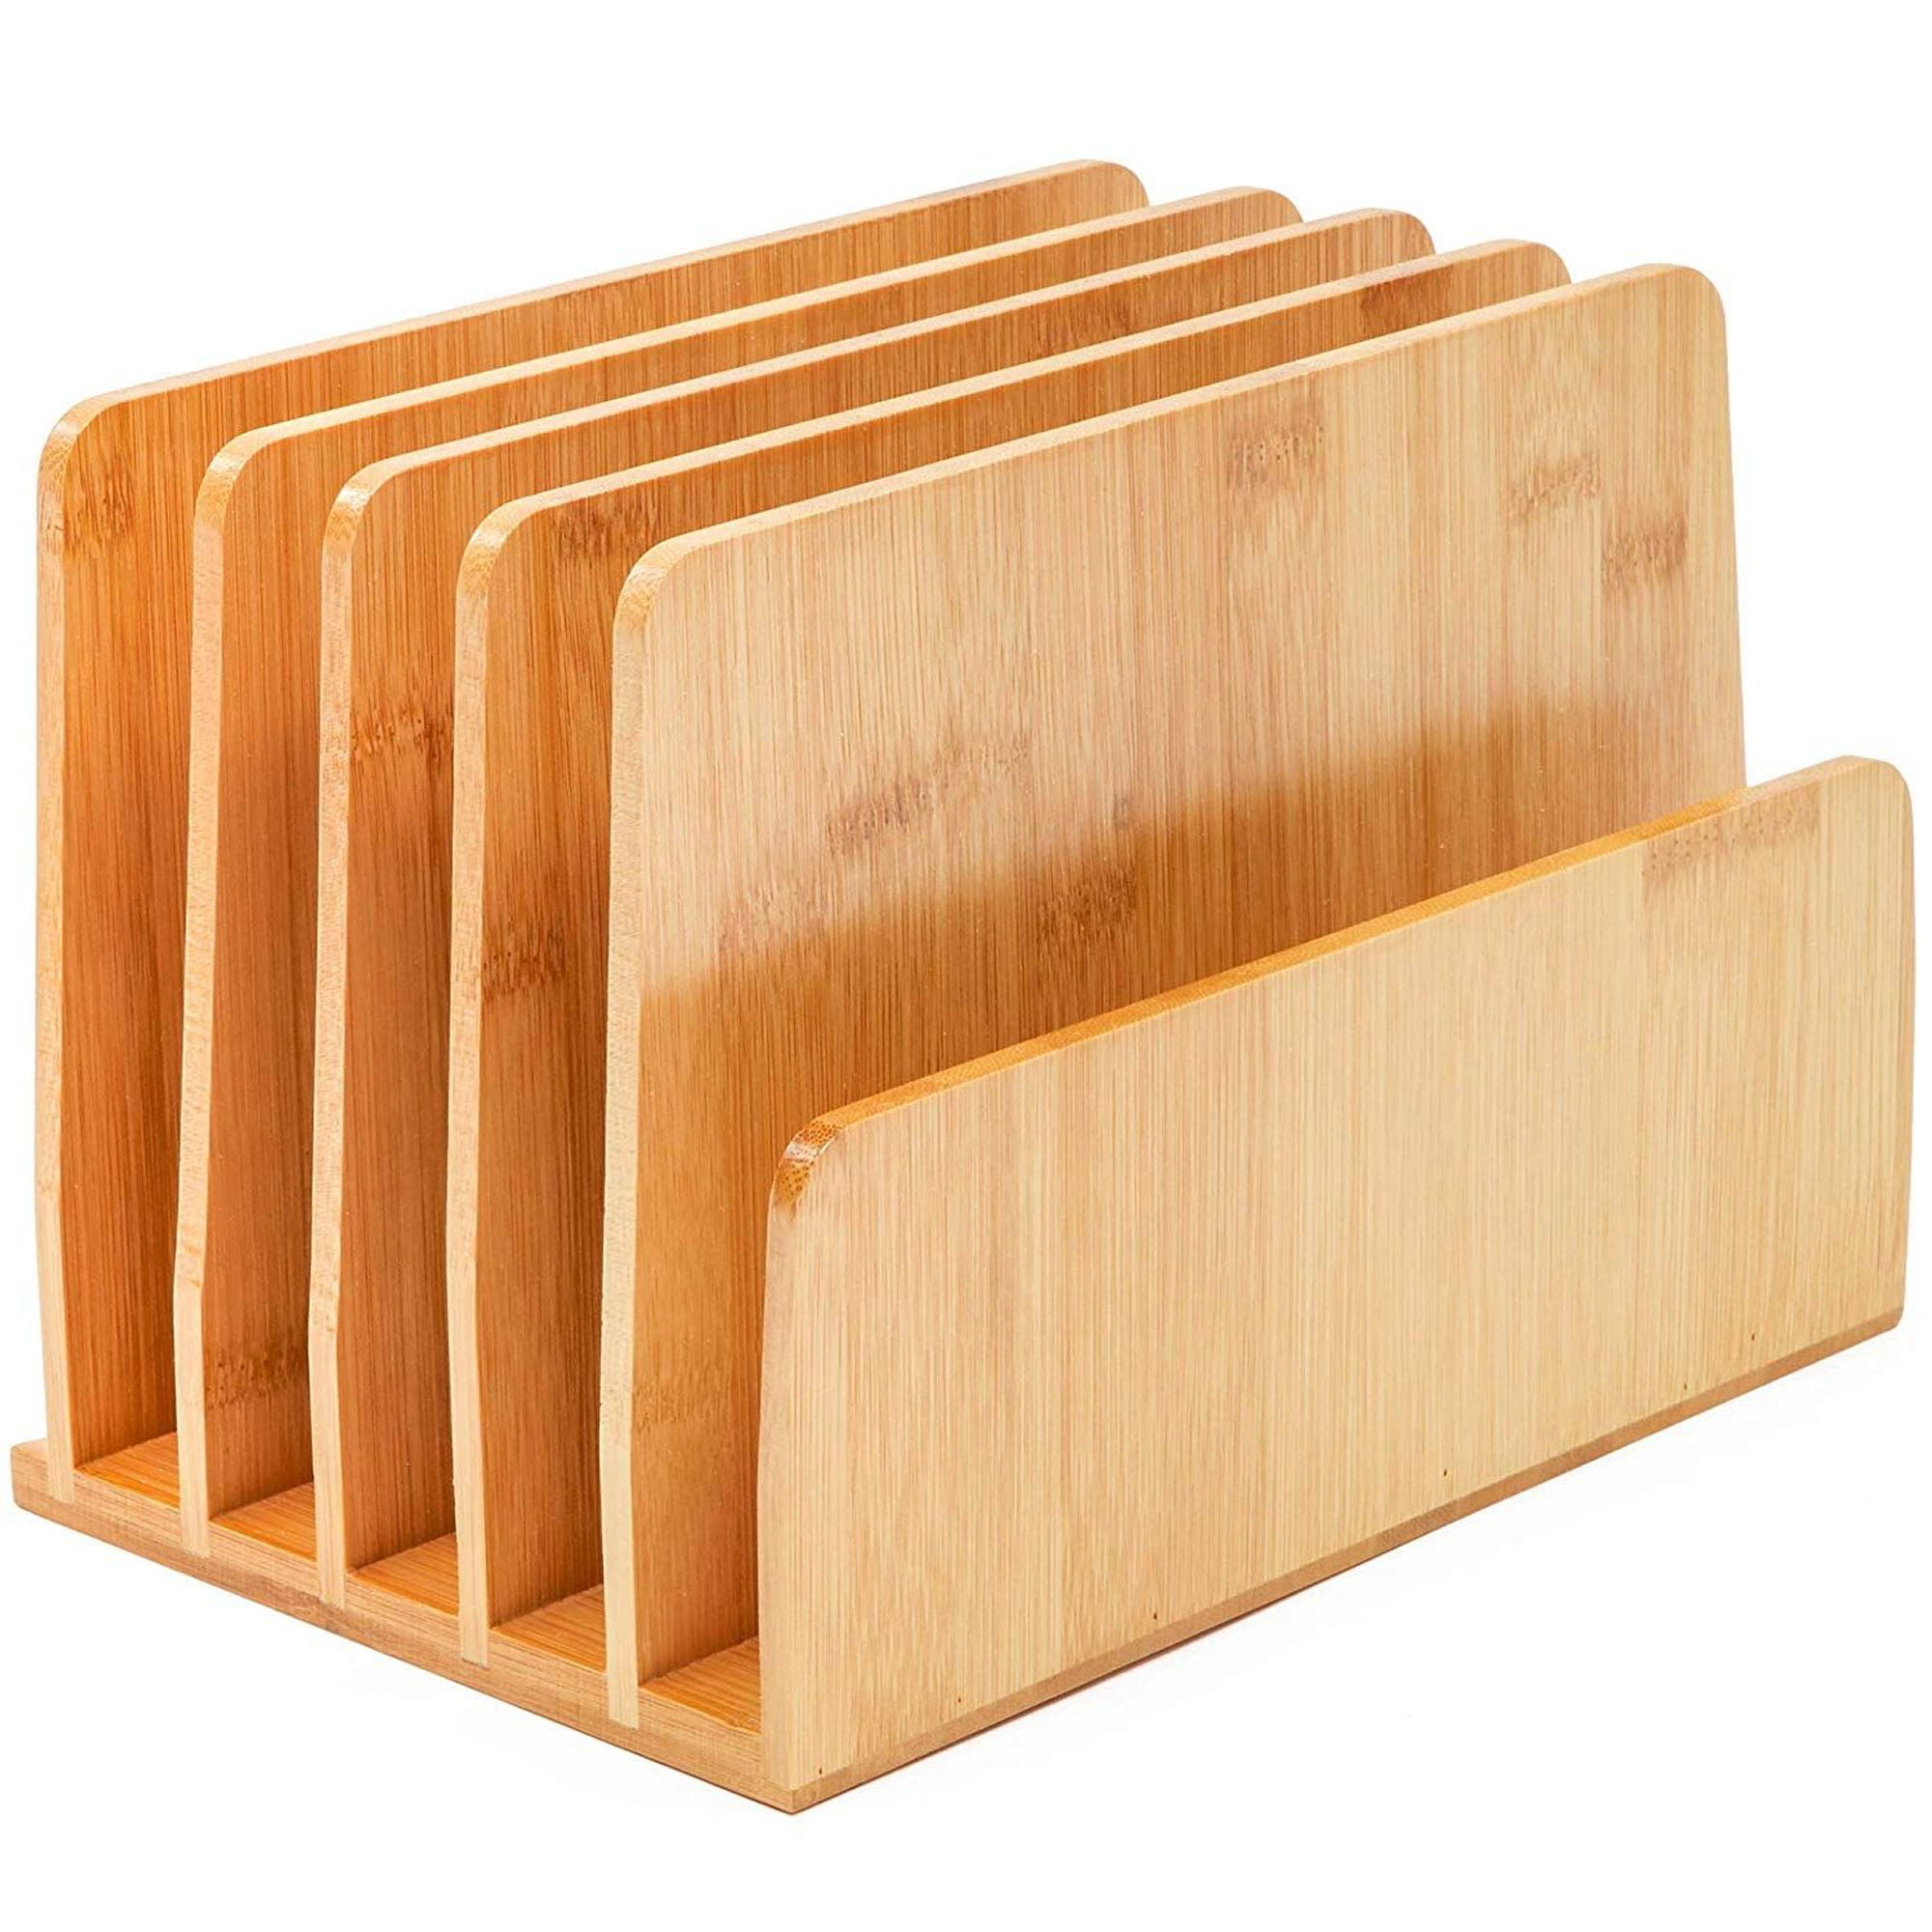 Bamboo Desk File Organizer Wood Desktop Mail Holder Sorters For